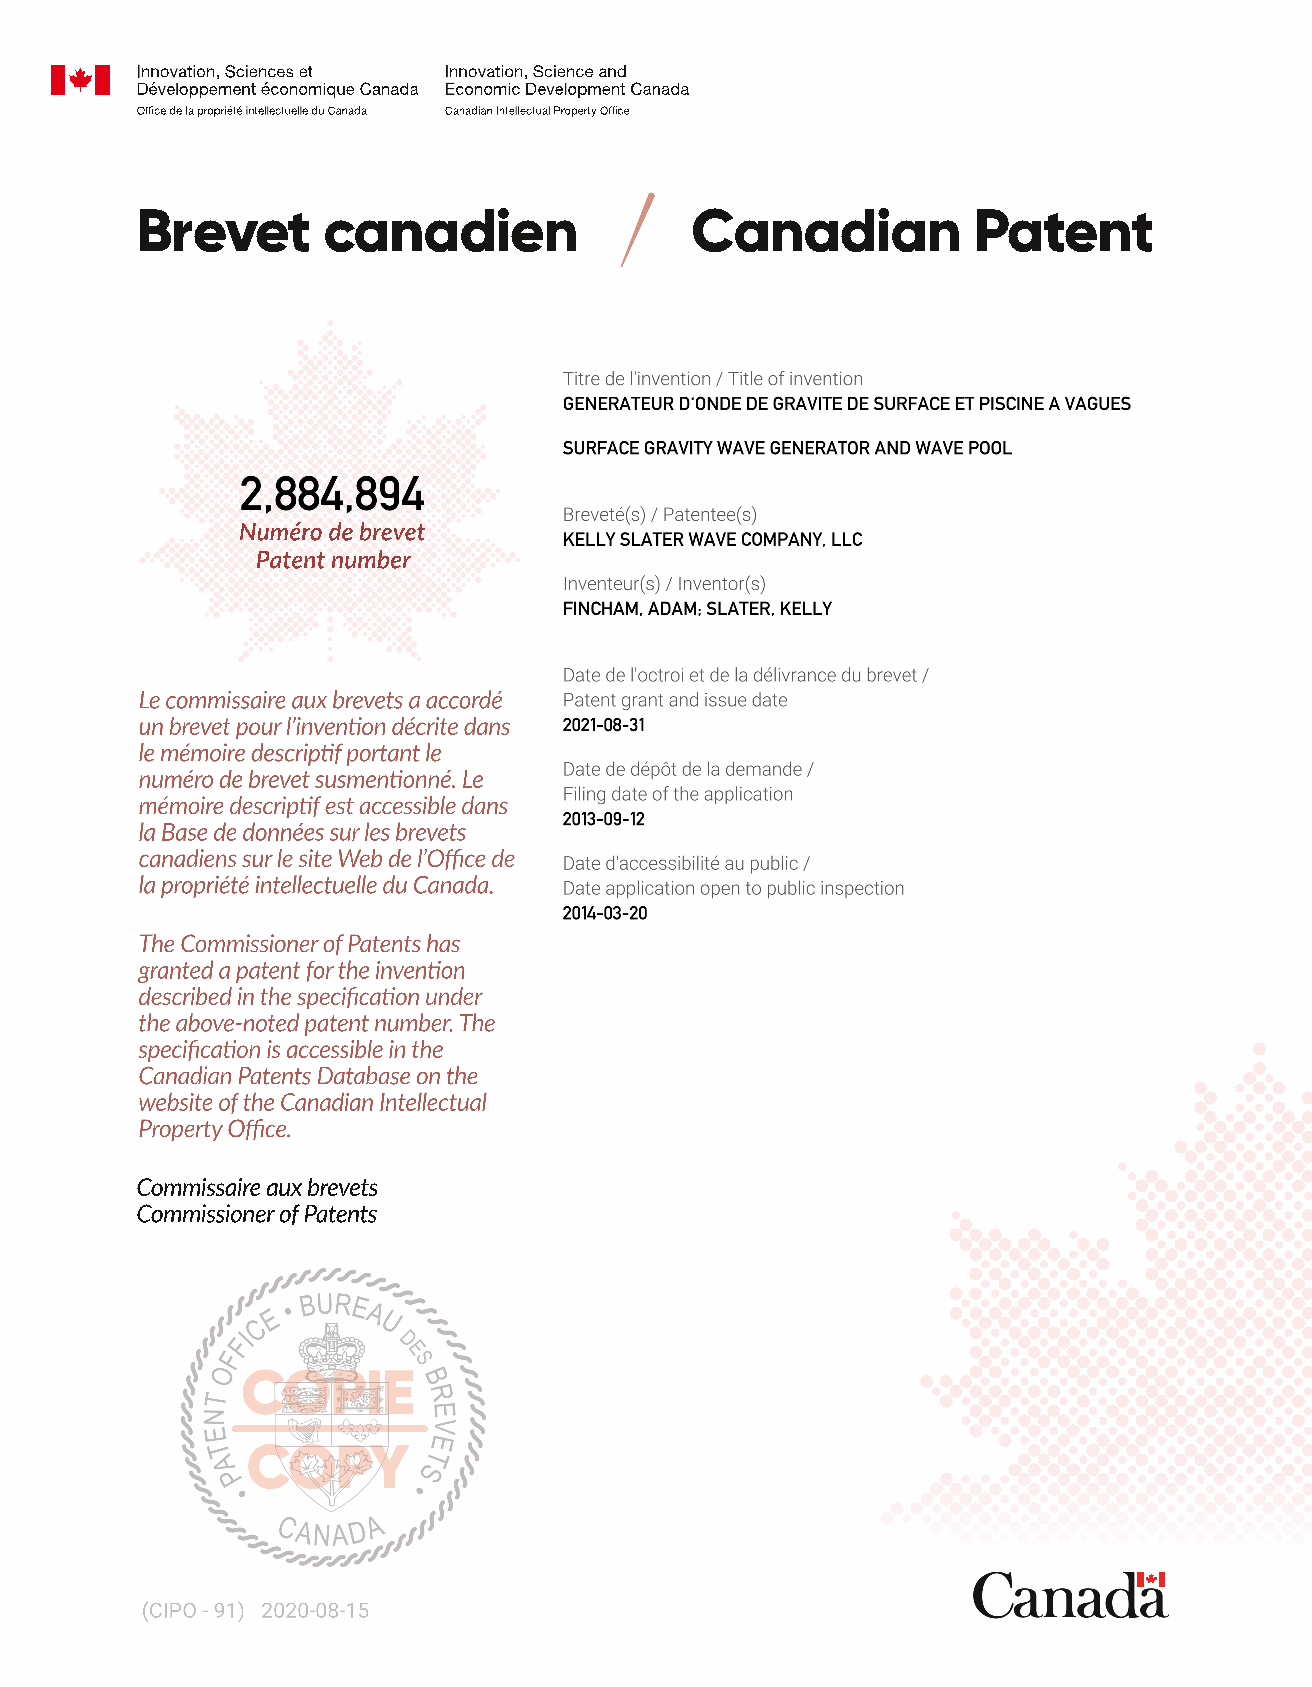 Document de brevet canadien 2884894. Certificat électronique d'octroi 20210831. Image 1 de 1